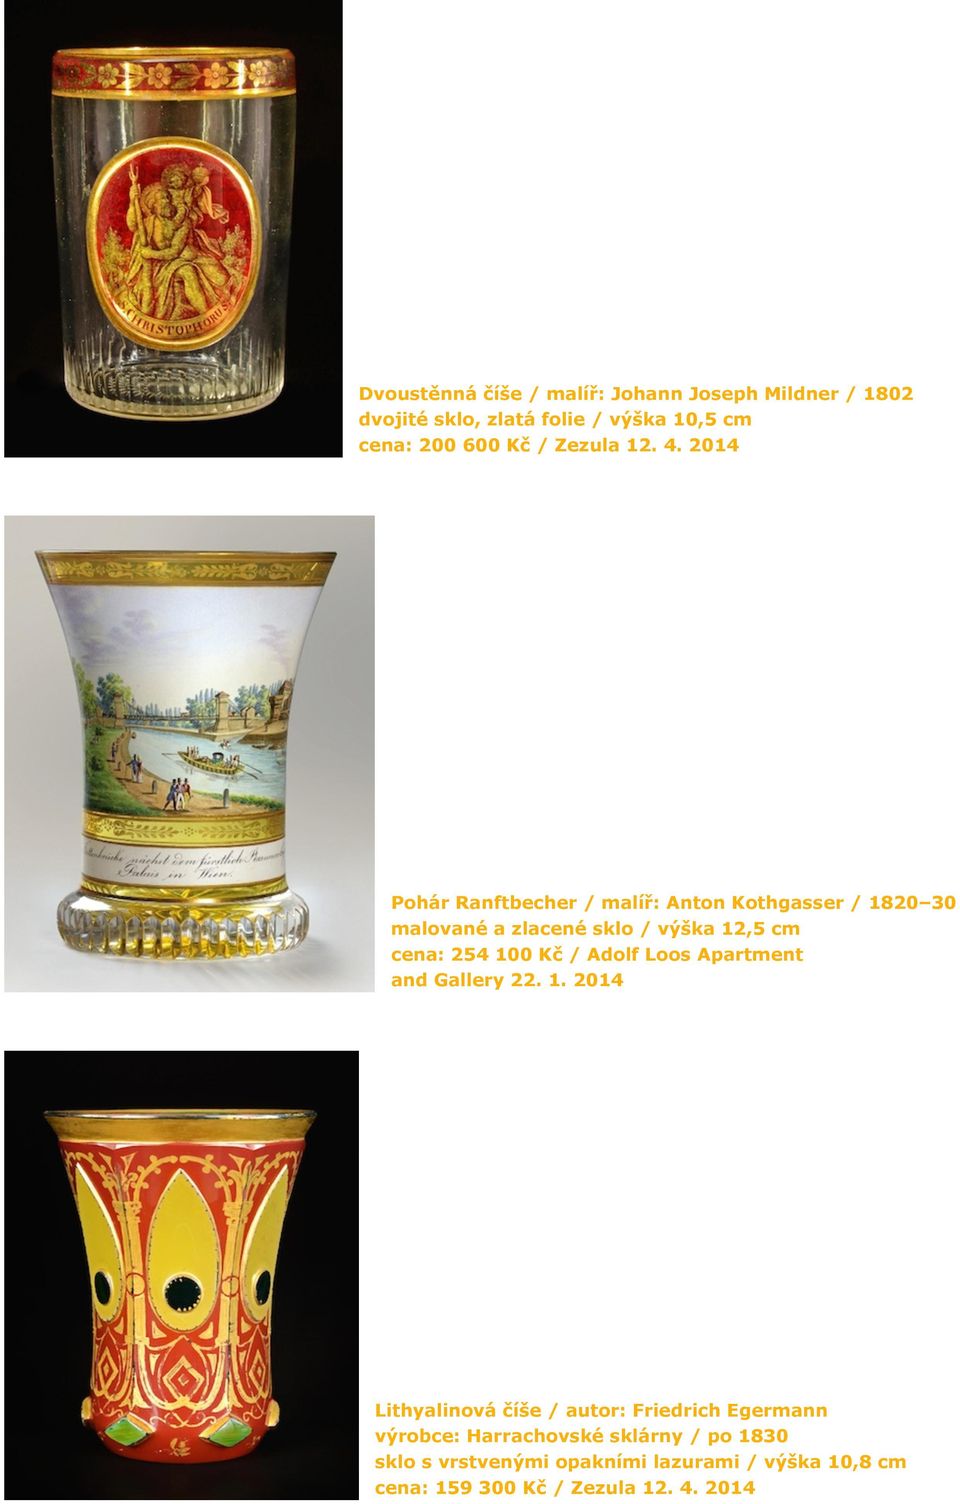 2014 Pohár Ranftbecher / malíř: Anton Kothgasser / 1820 30 malované a zlacené sklo / výška 12,5 cm cena: 254 100 Kč